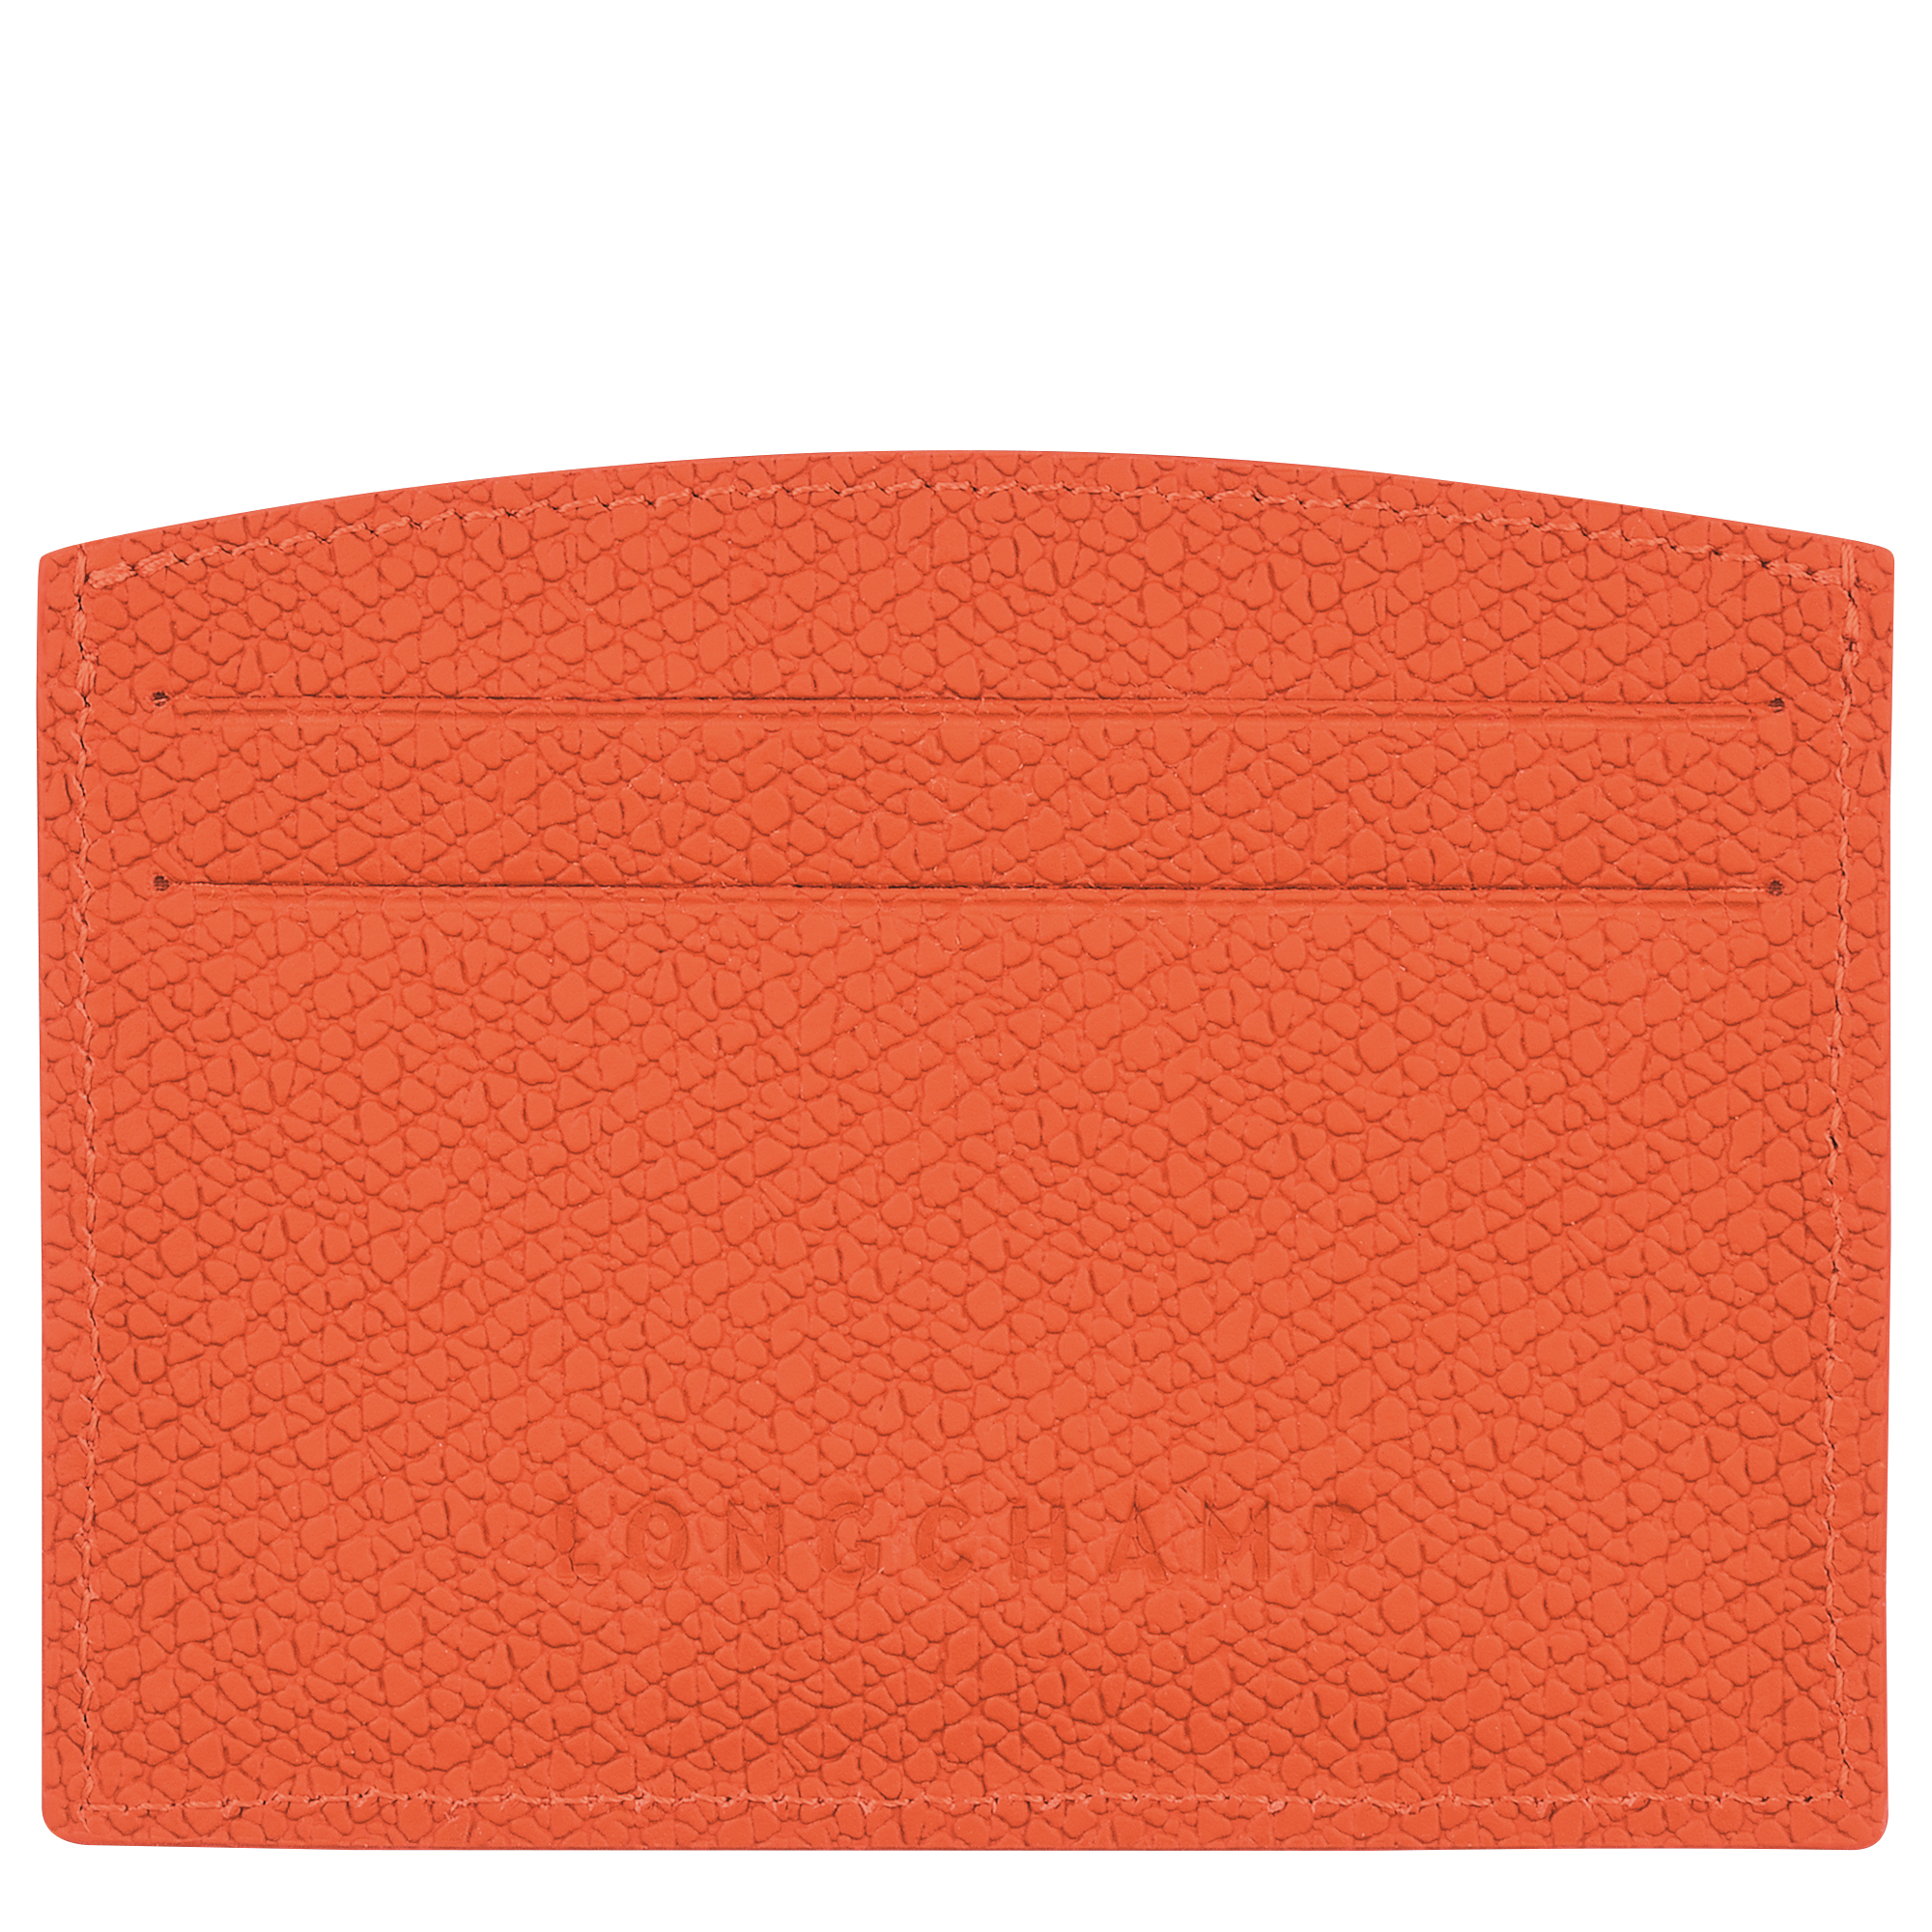 Le Roseau Card holder, Orange